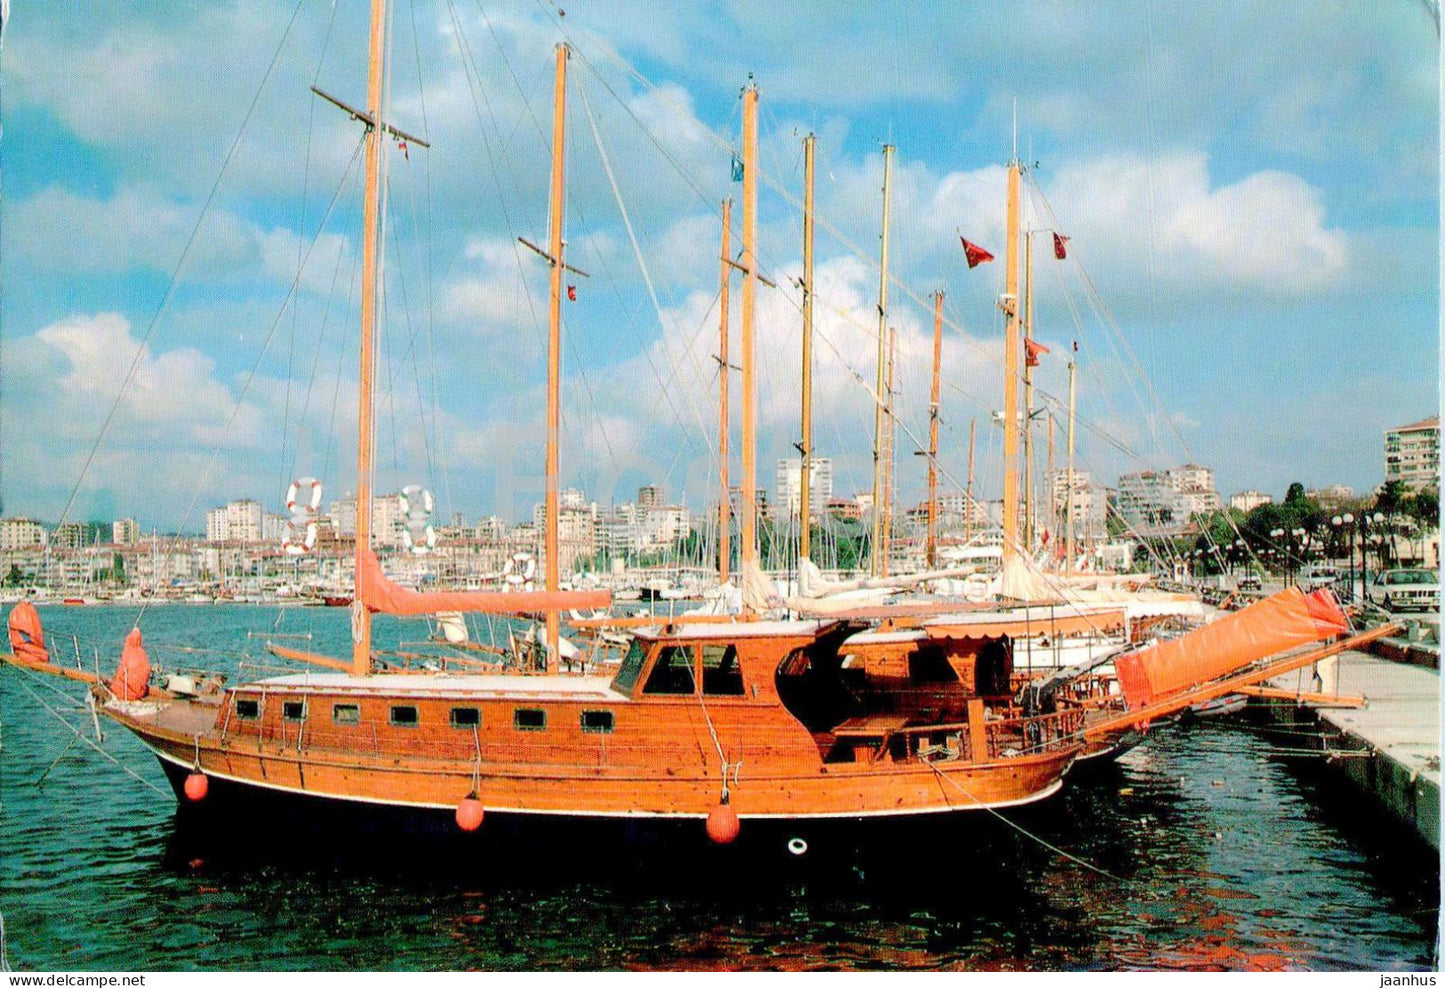 Istanbul - Kalamis - port - ship - boat - 34-35 - Turkey - unused - JH Postcards